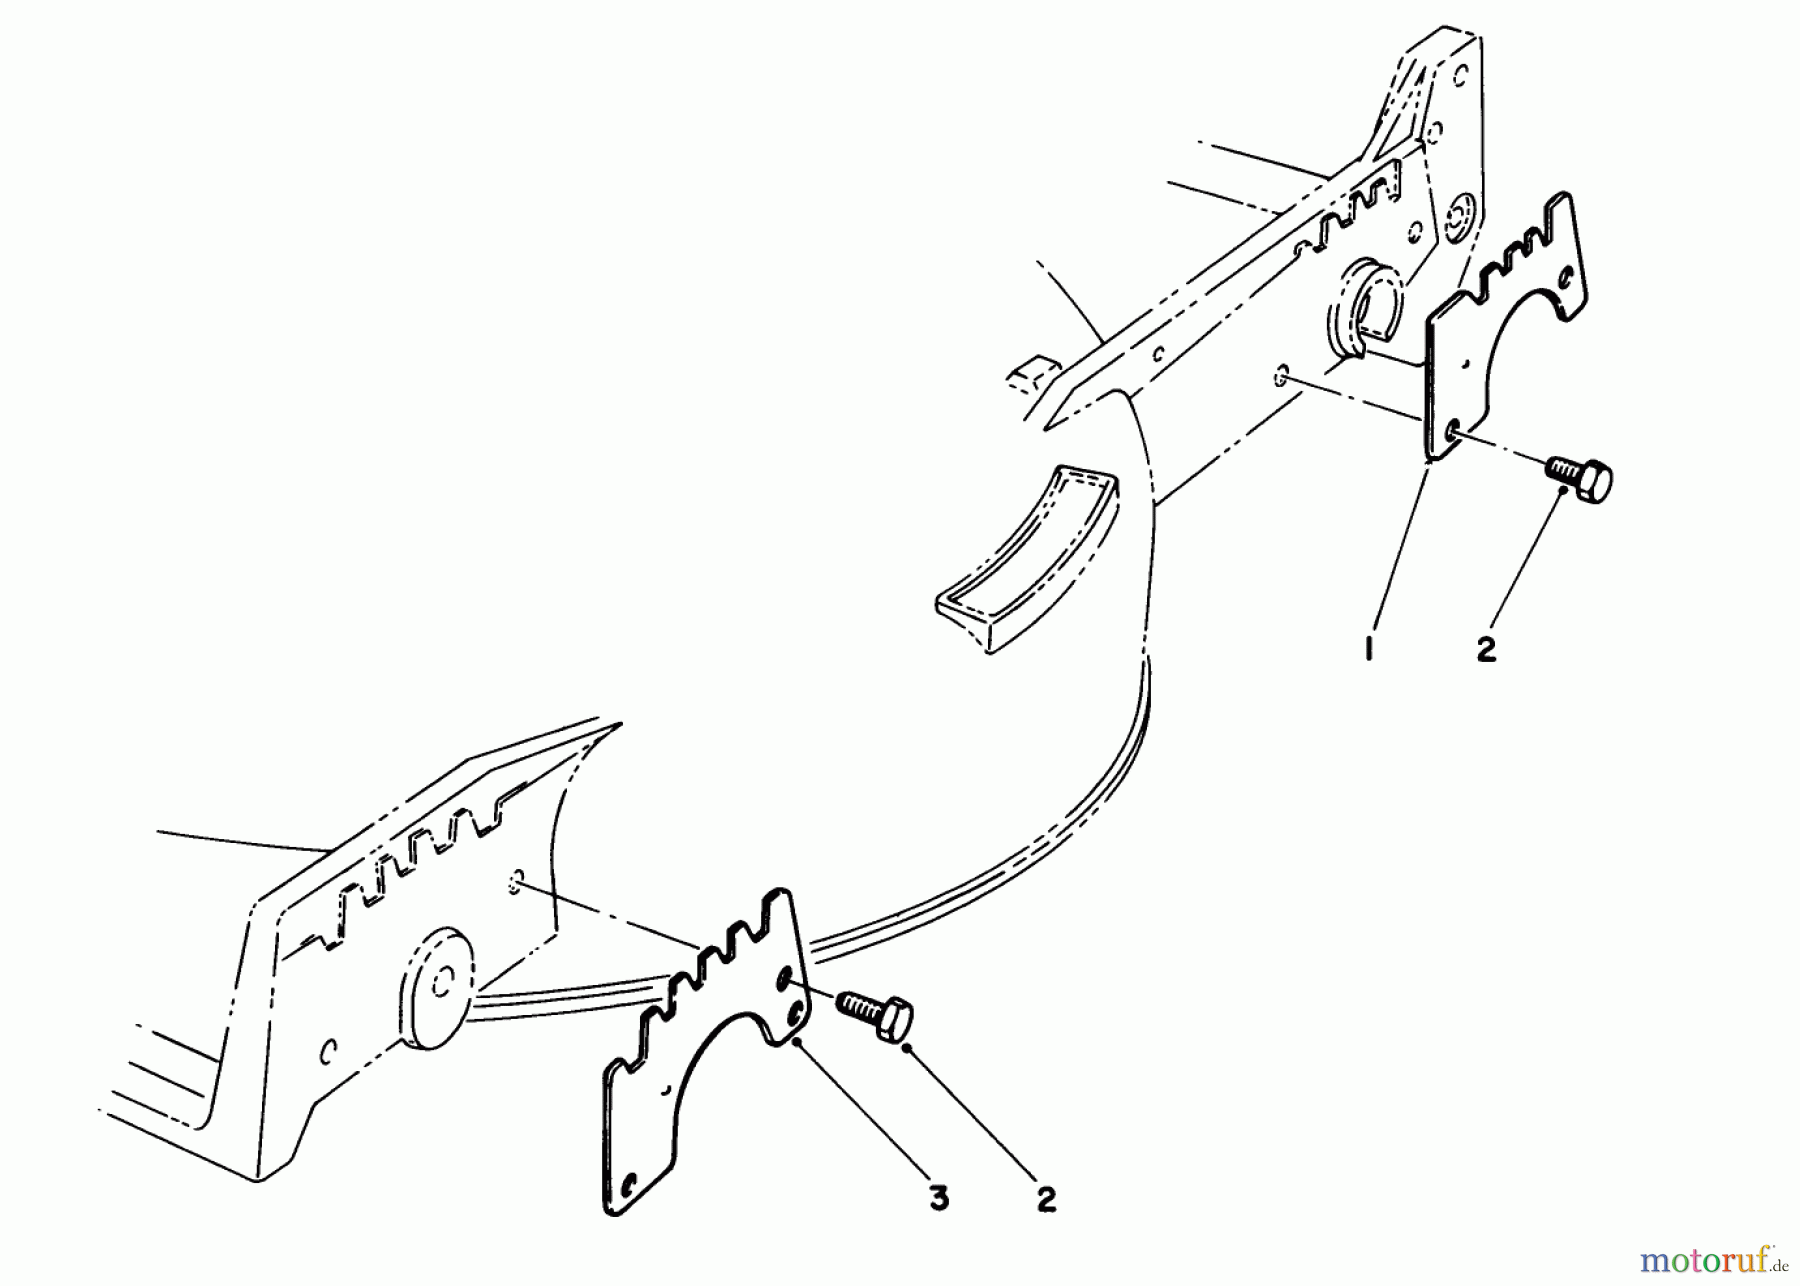  Toro Neu Mowers, Walk-Behind Seite 1 20695 - Toro Lawnmower, 1988 (8000001-8999999) WEAR PLATE KIT MODEL NO. 49-4080 (OPTIONAL)